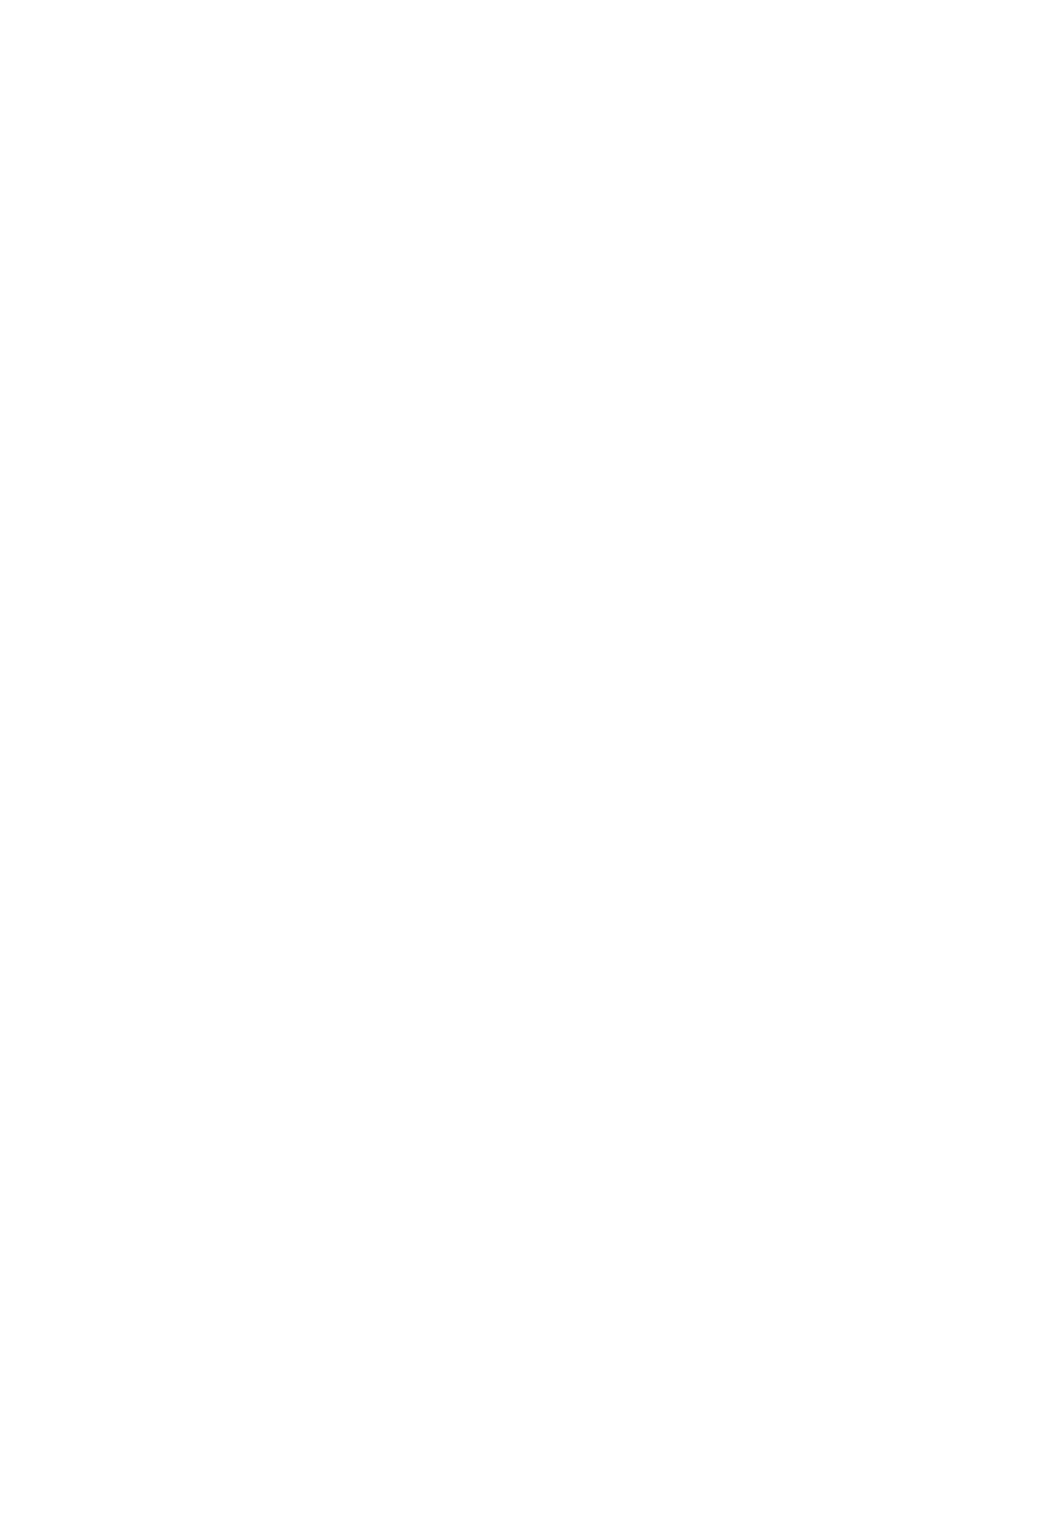 International Petroleum logo for dark backgrounds (transparent PNG)